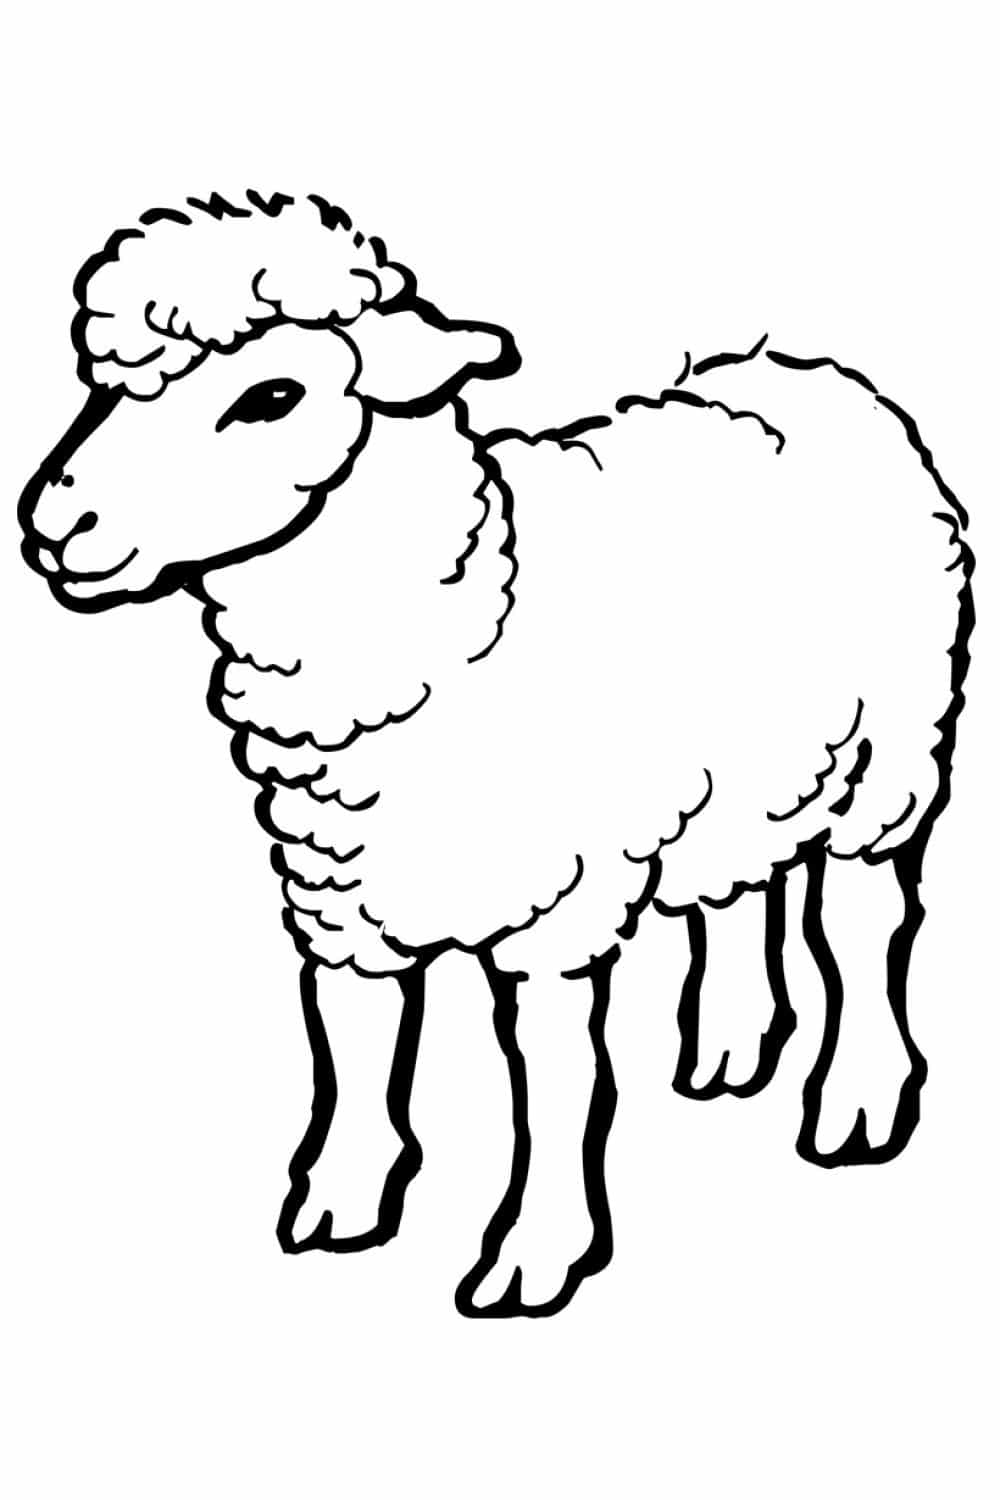 ציור של כבש לצביעה ולהדפסה